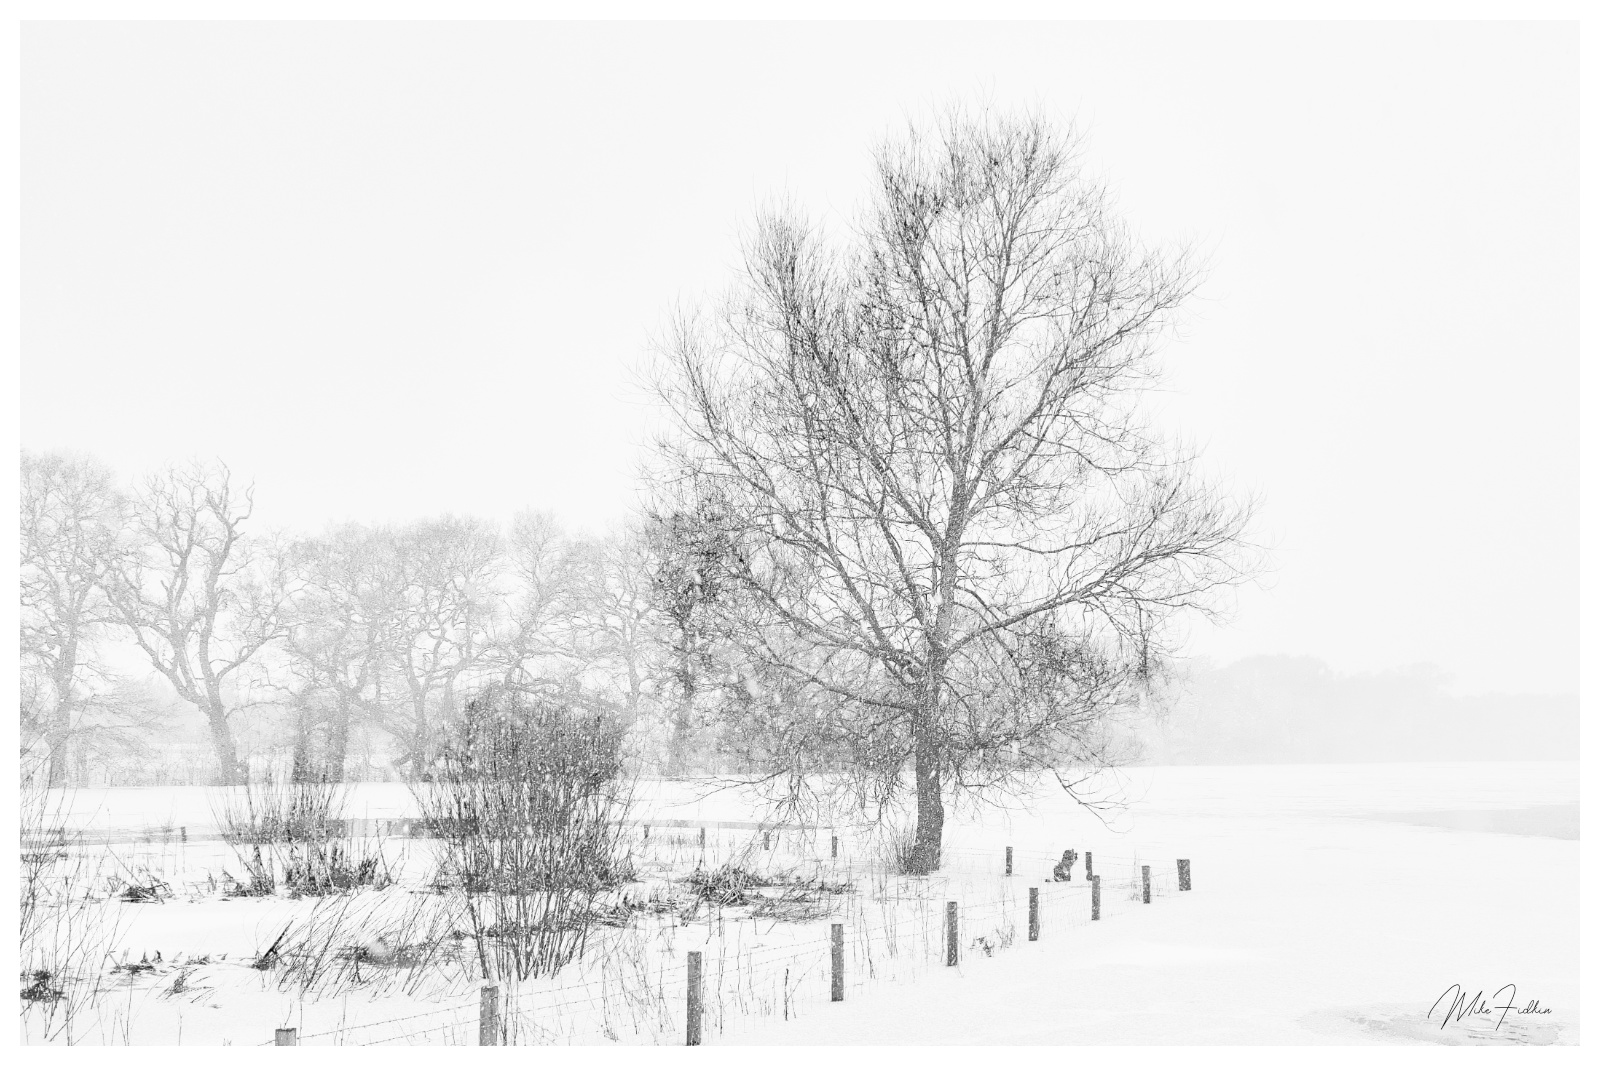 Winter, Mike Fidkin